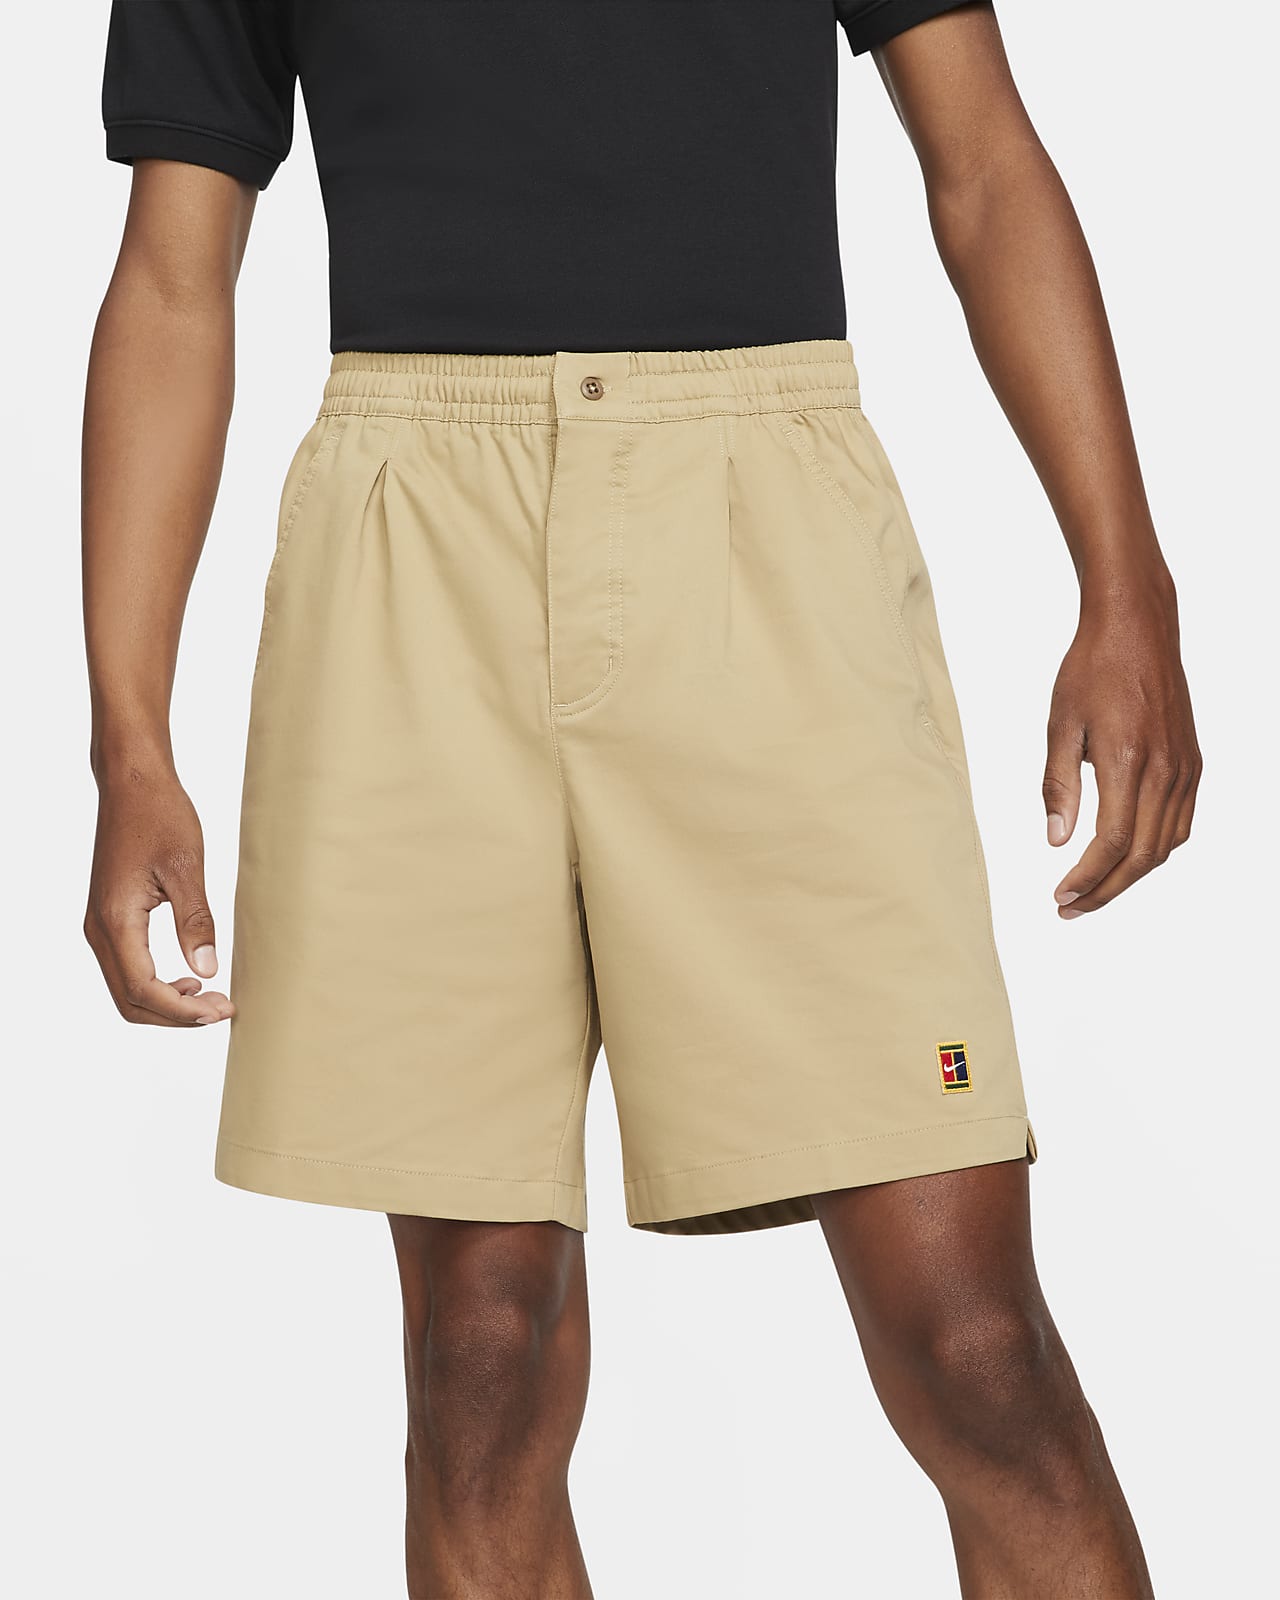 Shorts da tennis NikeCourt - Uomo